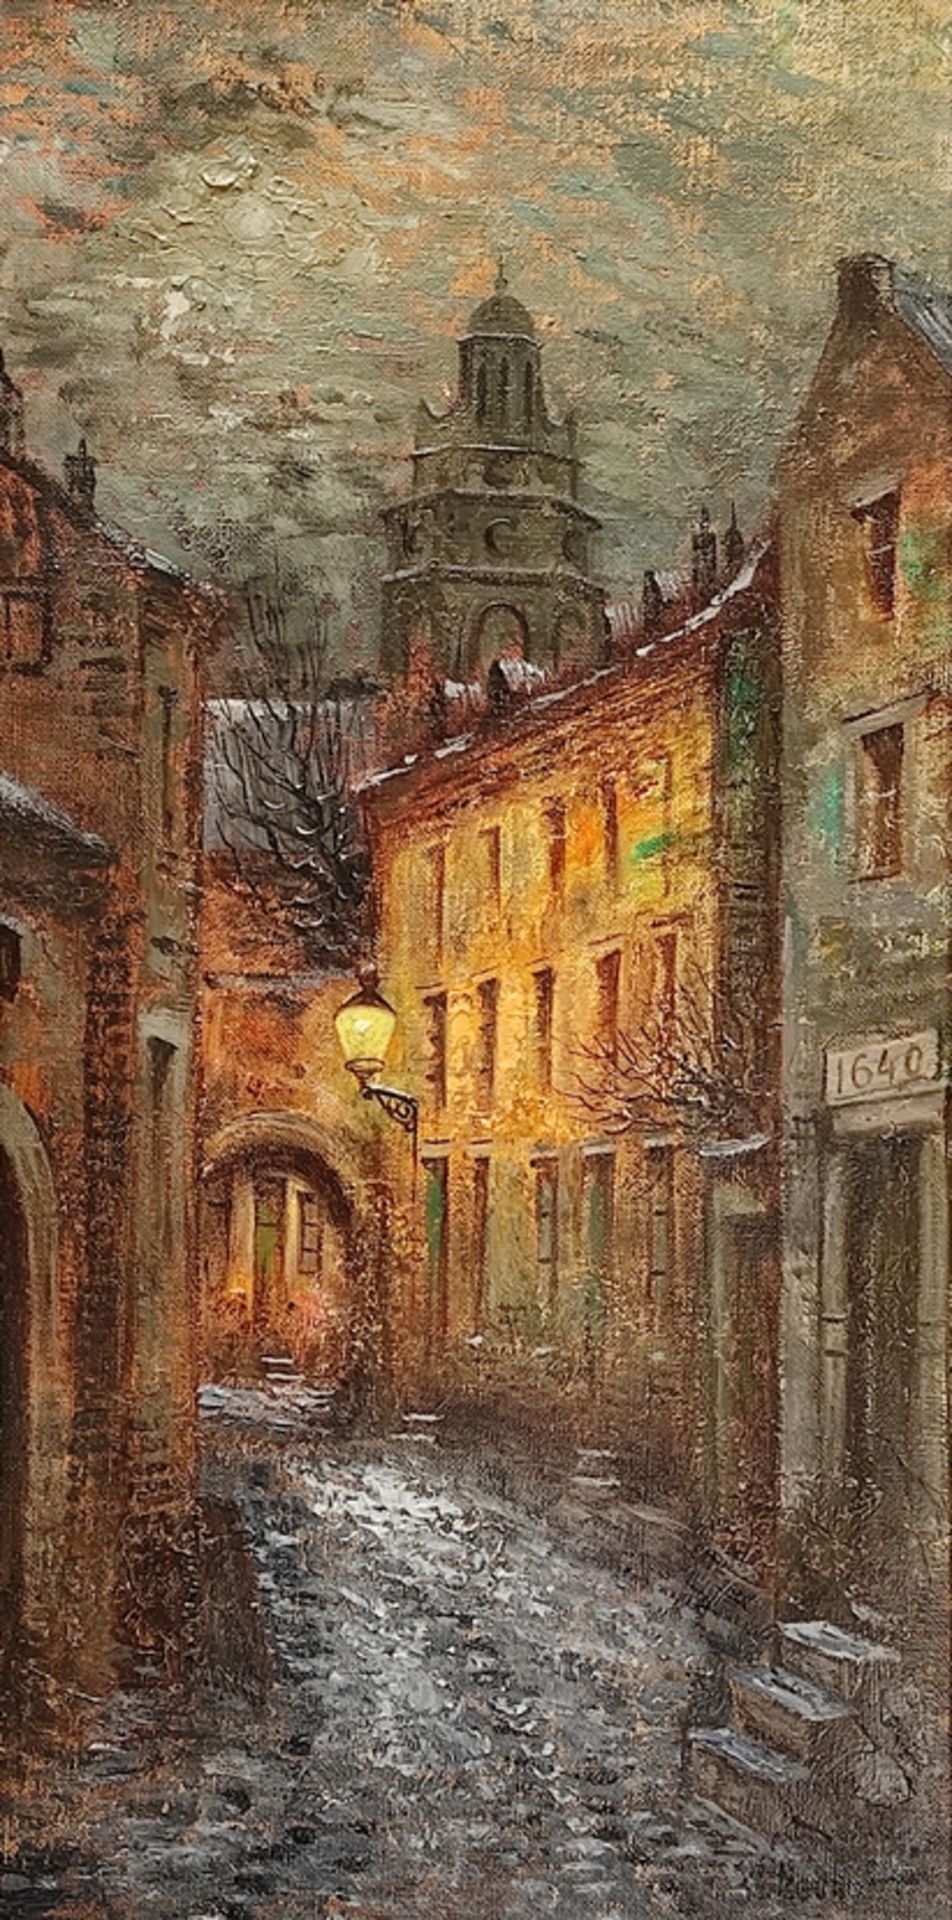 Neuhof, Waltère Joseph (1904 Maastricht - 1982) "Winterabend in Maastricht", Öl auf Leinwand, recht